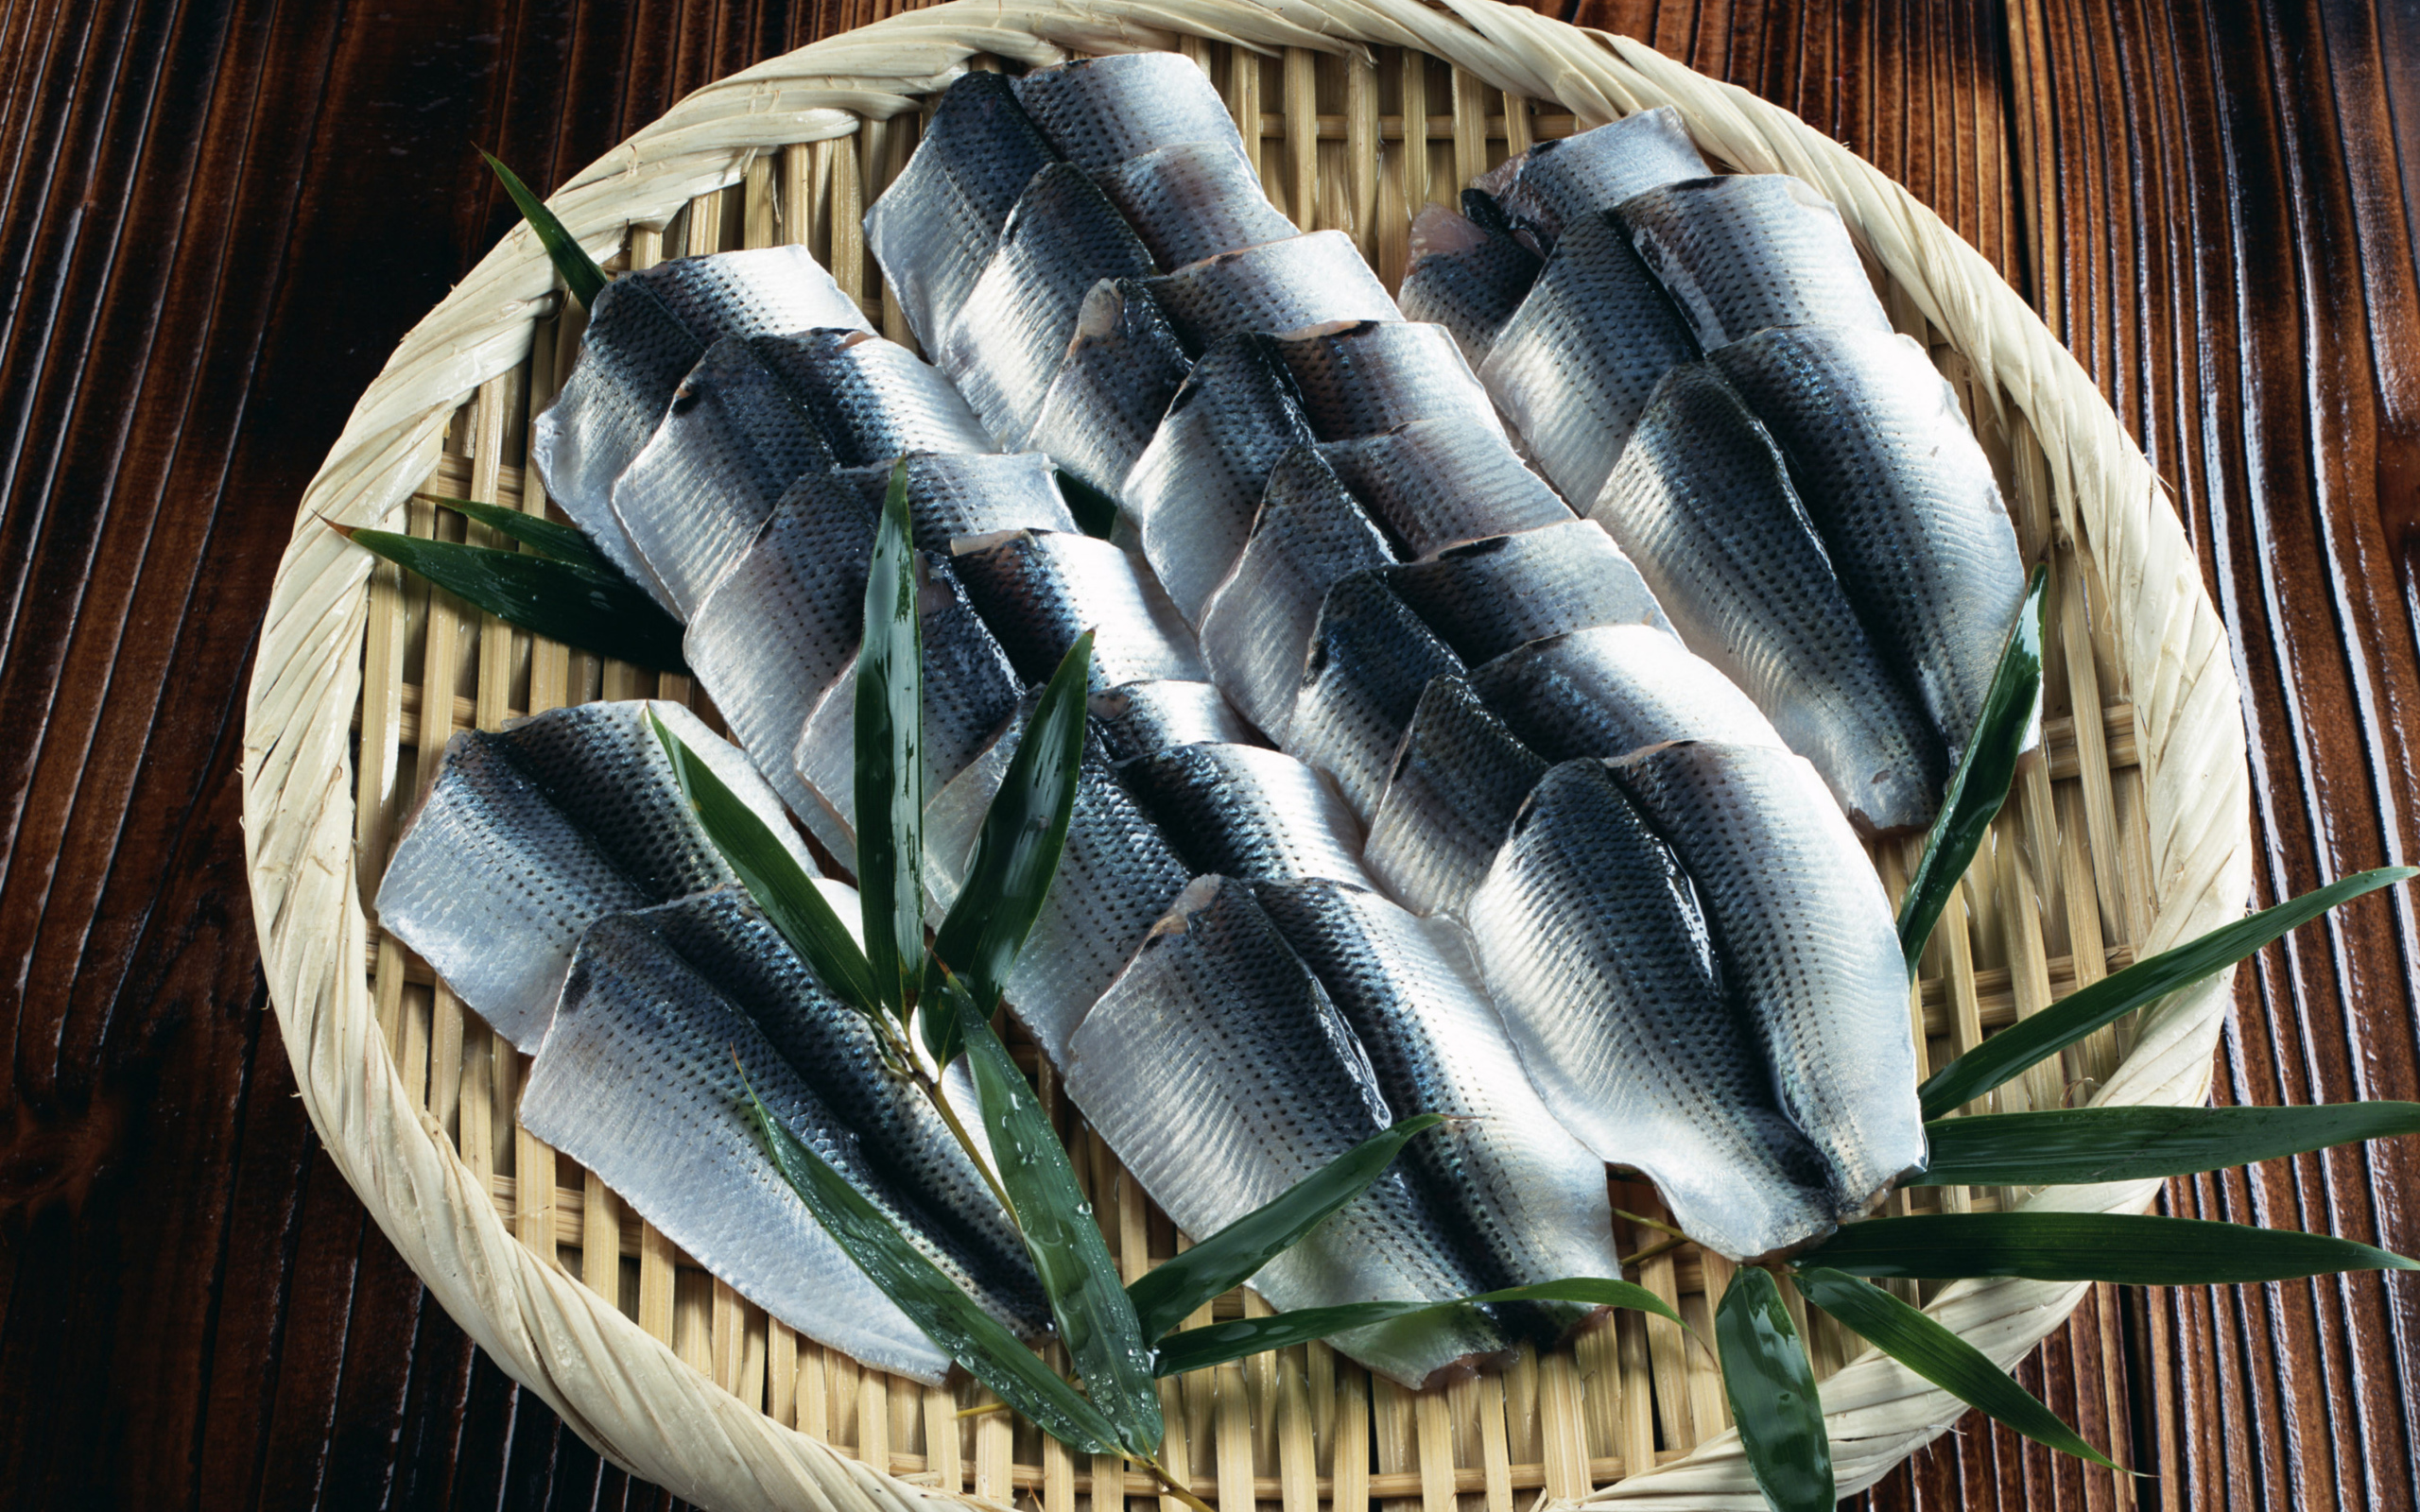 Филе соленой рыбы на бамбуковой тарелке 